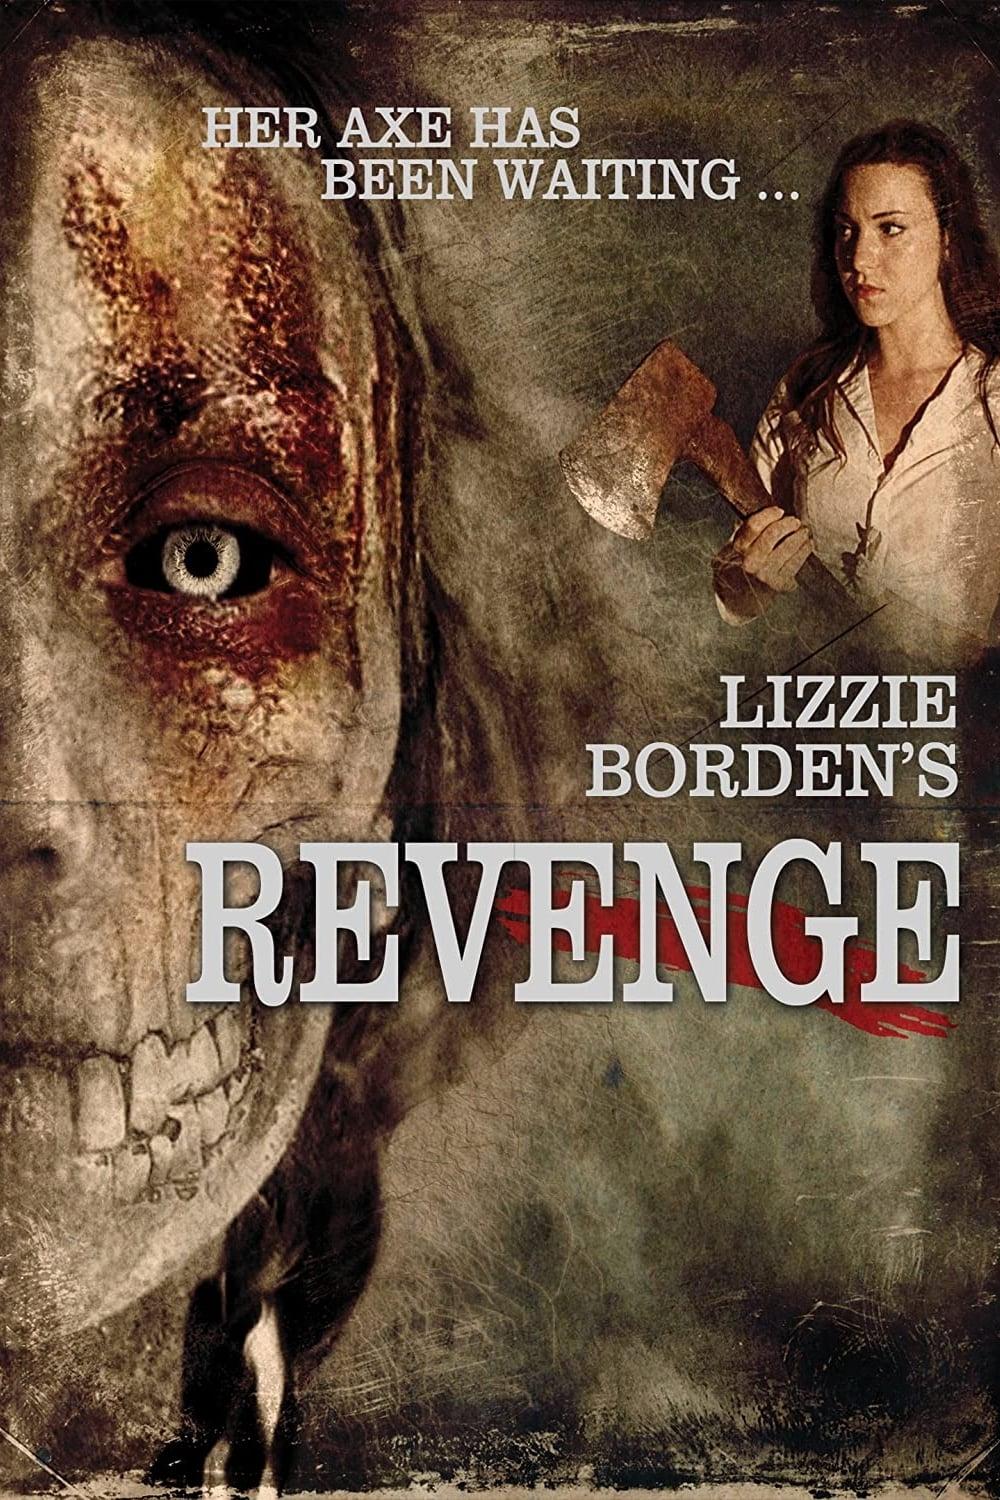 Lizzie Borden's Revenge poster